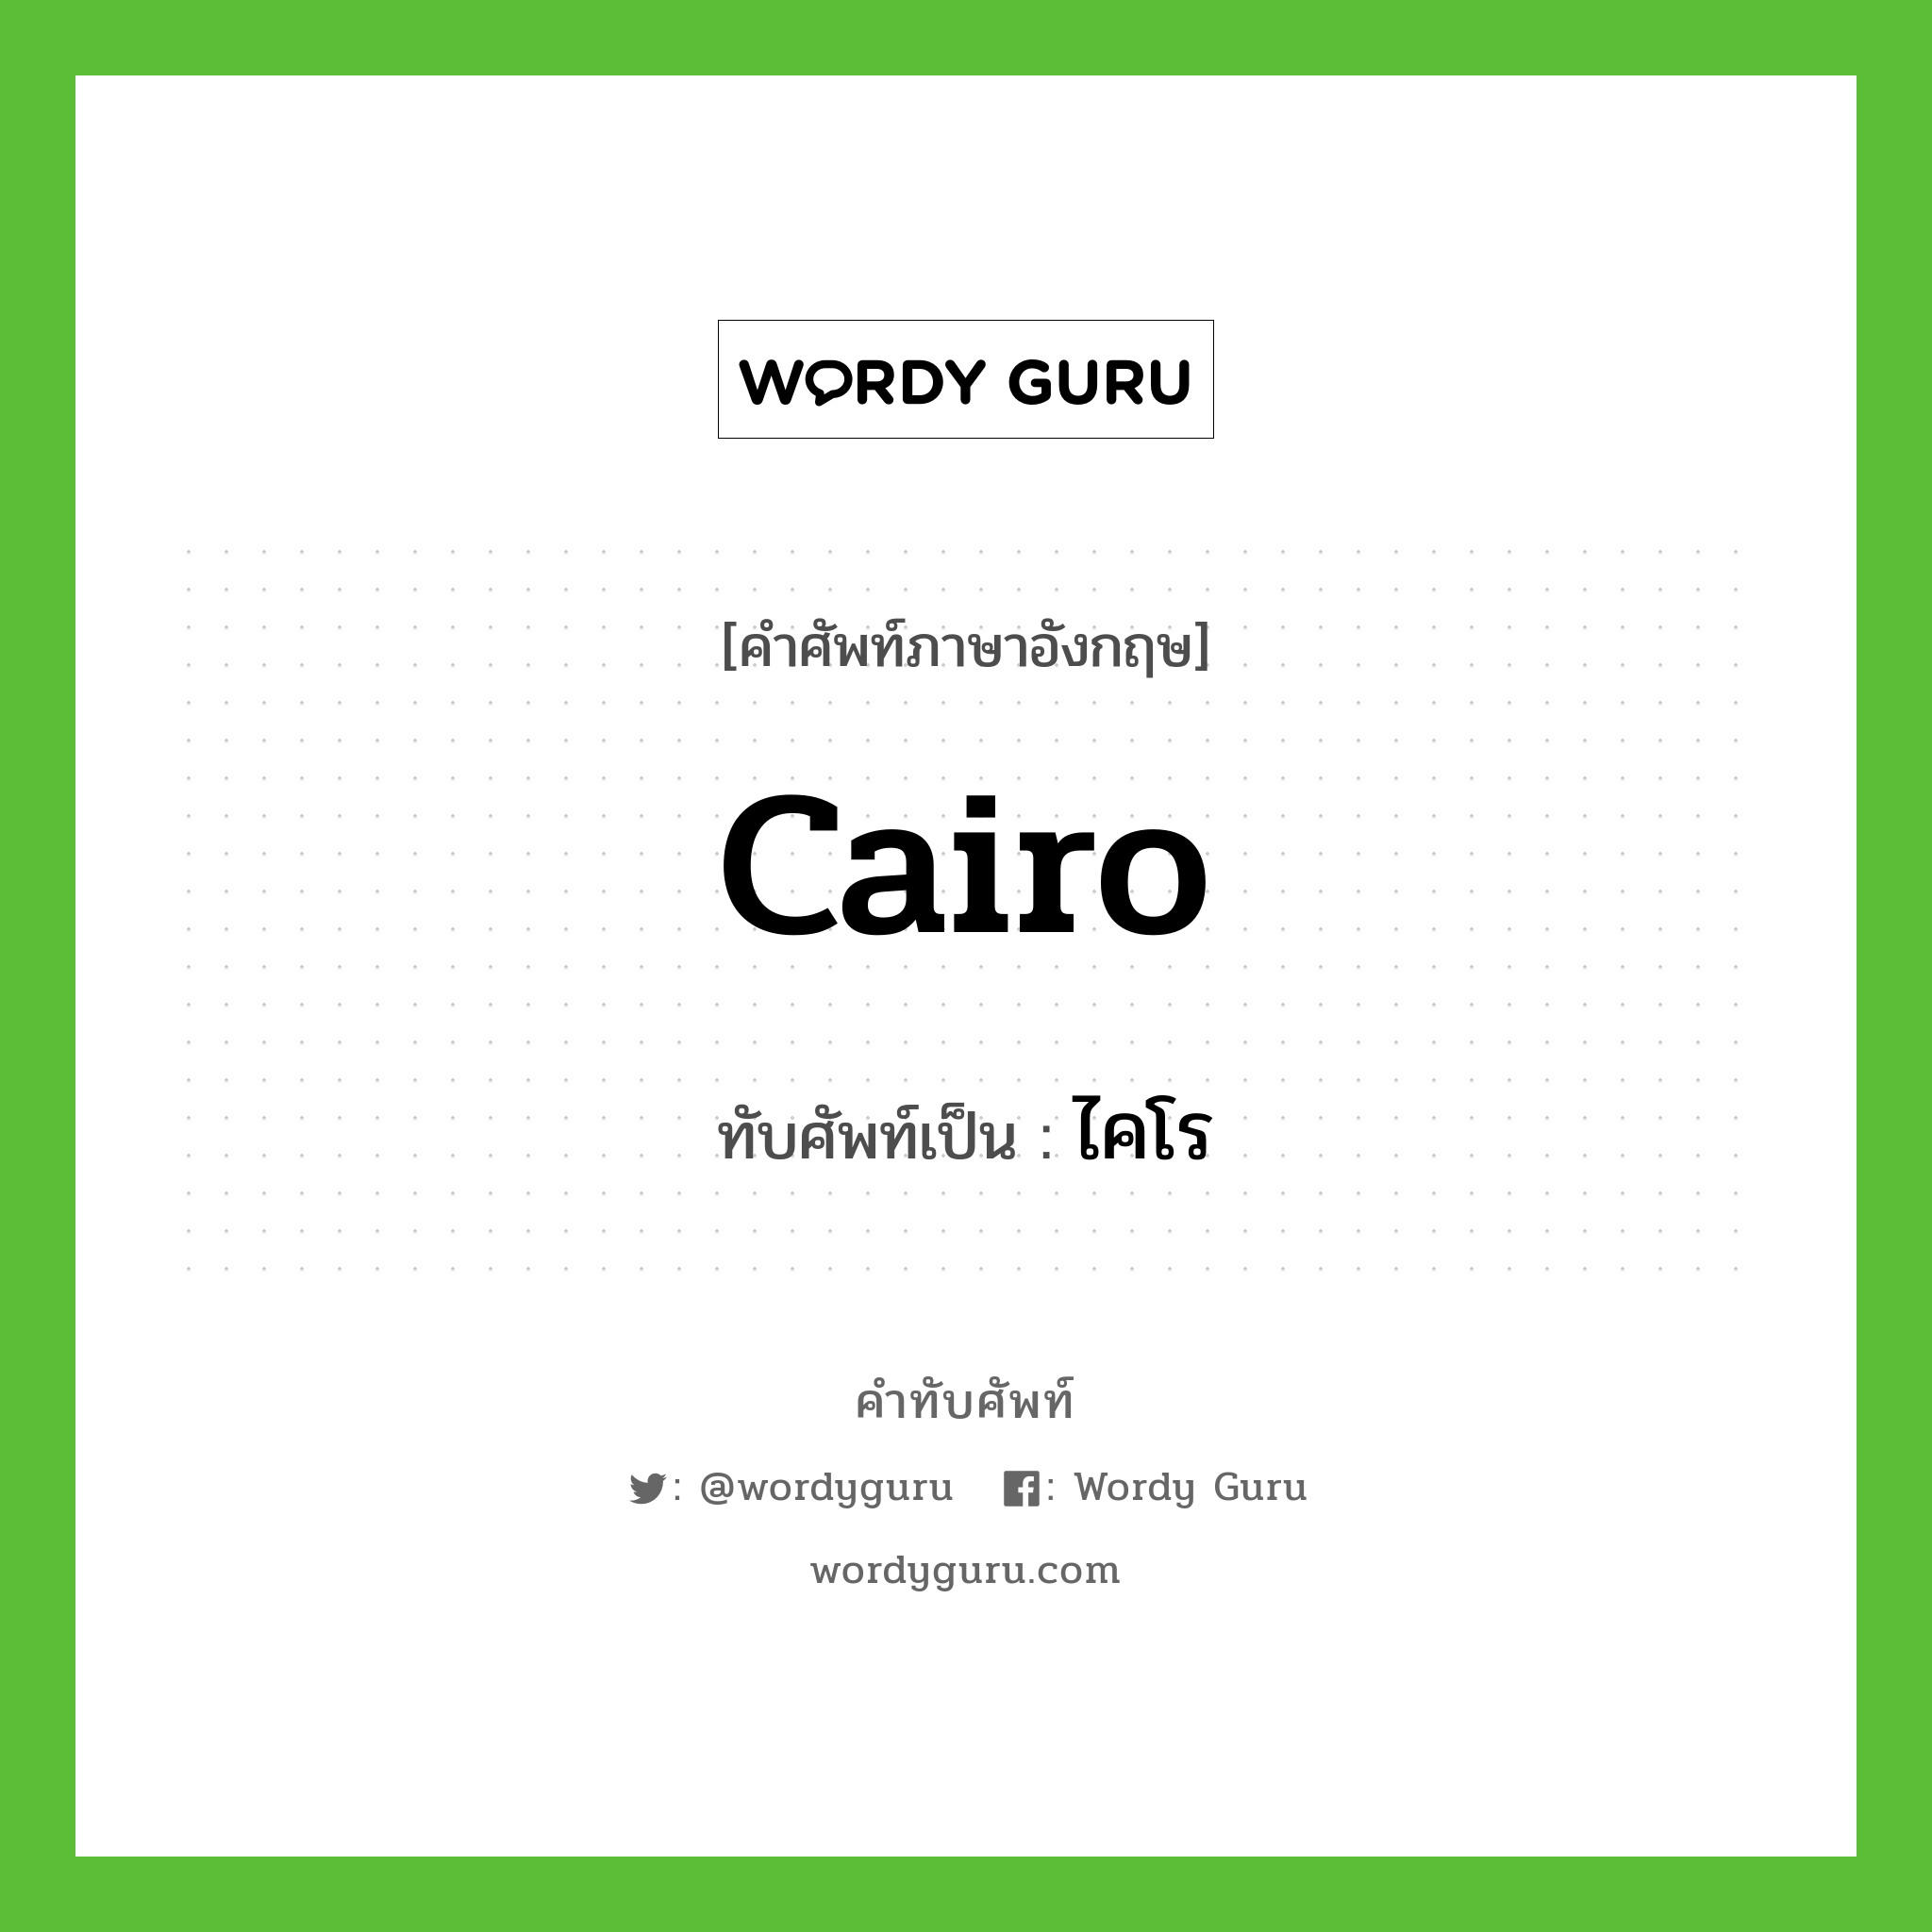 Cairo เขียนเป็นคำไทยว่าอะไร?, คำศัพท์ภาษาอังกฤษ Cairo ทับศัพท์เป็น ไคโร